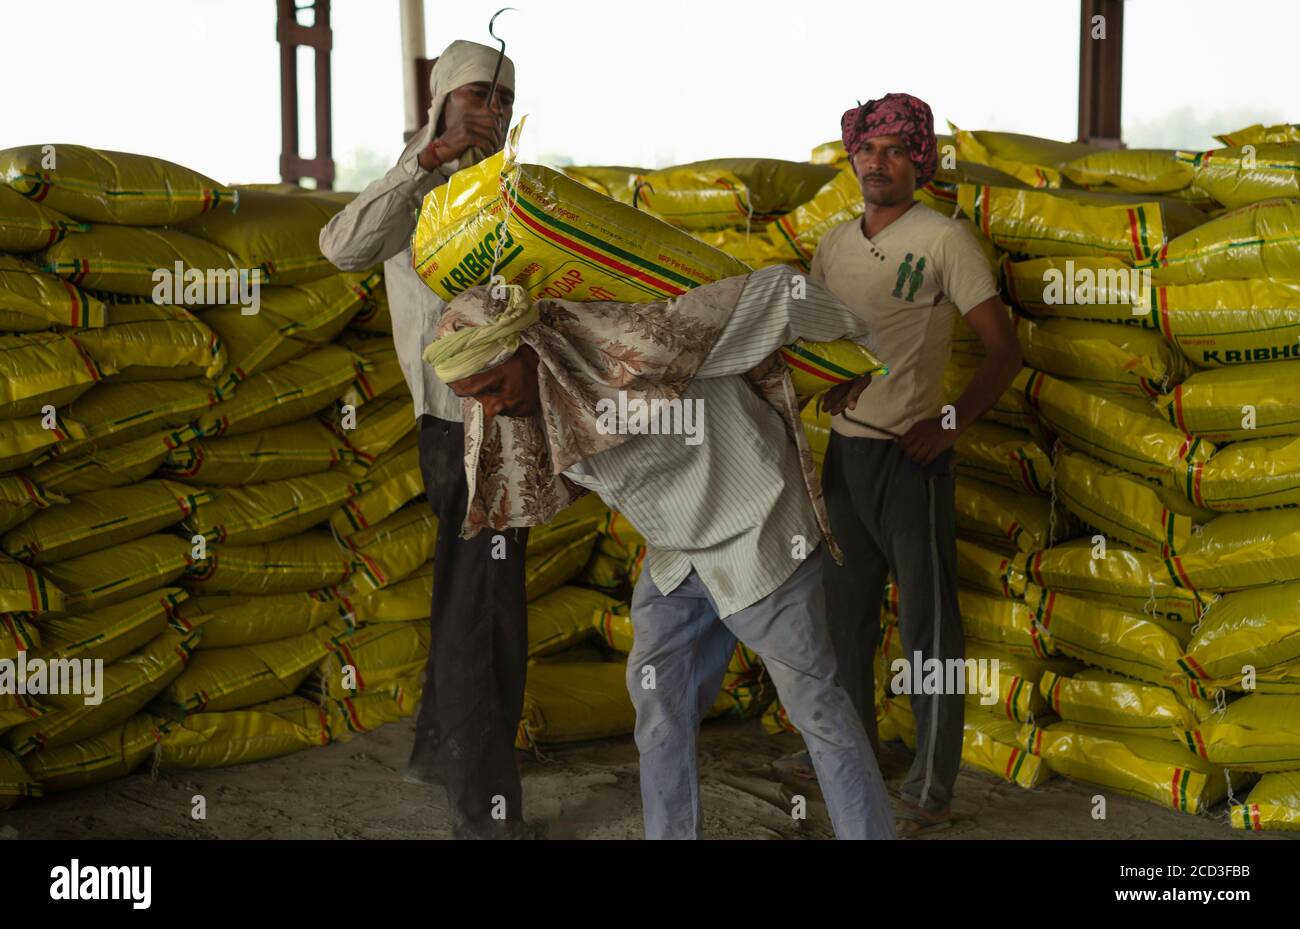 Sacco pesante di cemento da 50 kg caricato sul retro del lavoratore manuale per il trasporto a Mathura, Uttar Pradesh, India. Foto Stock